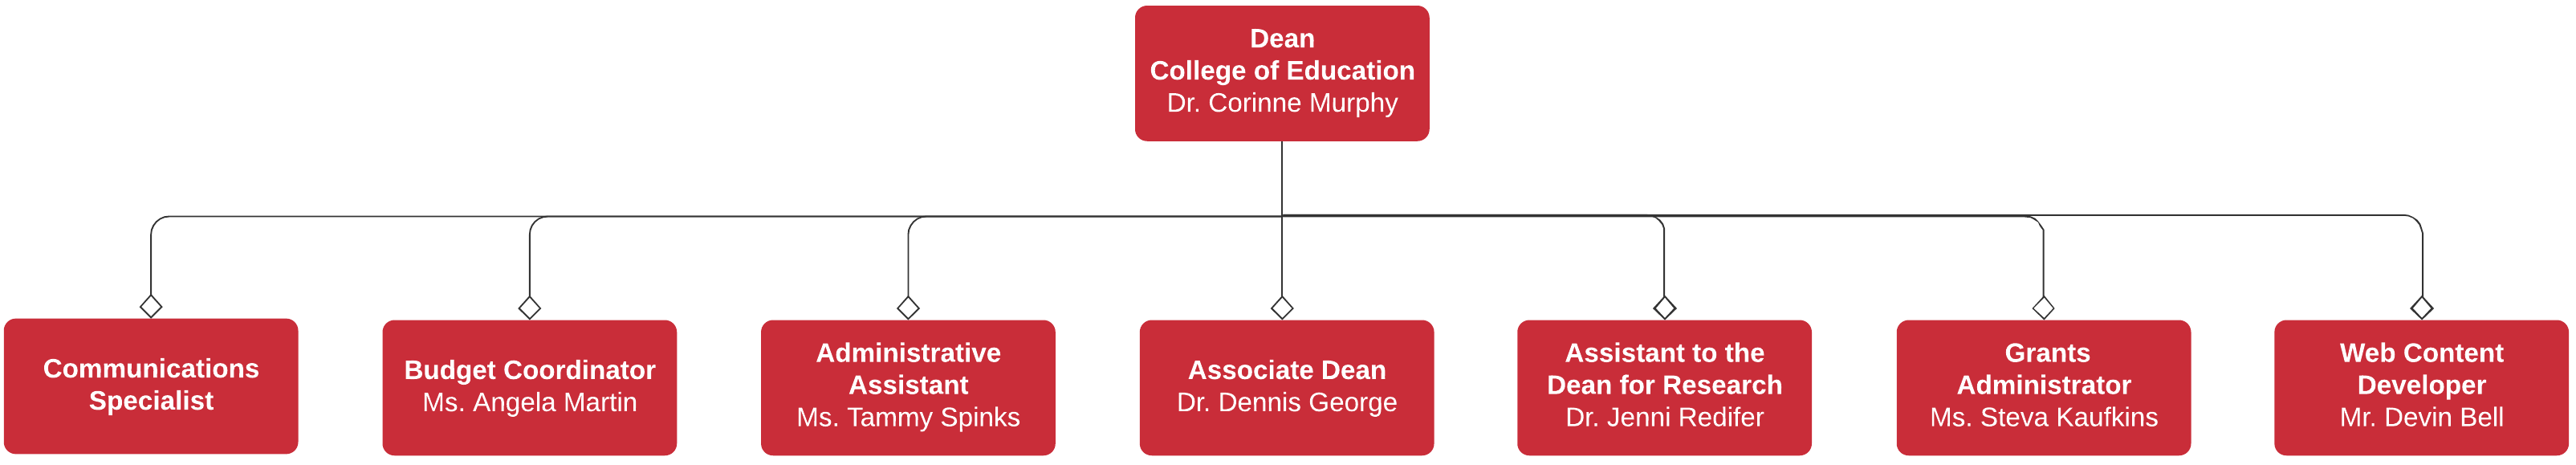 dean's office org chart